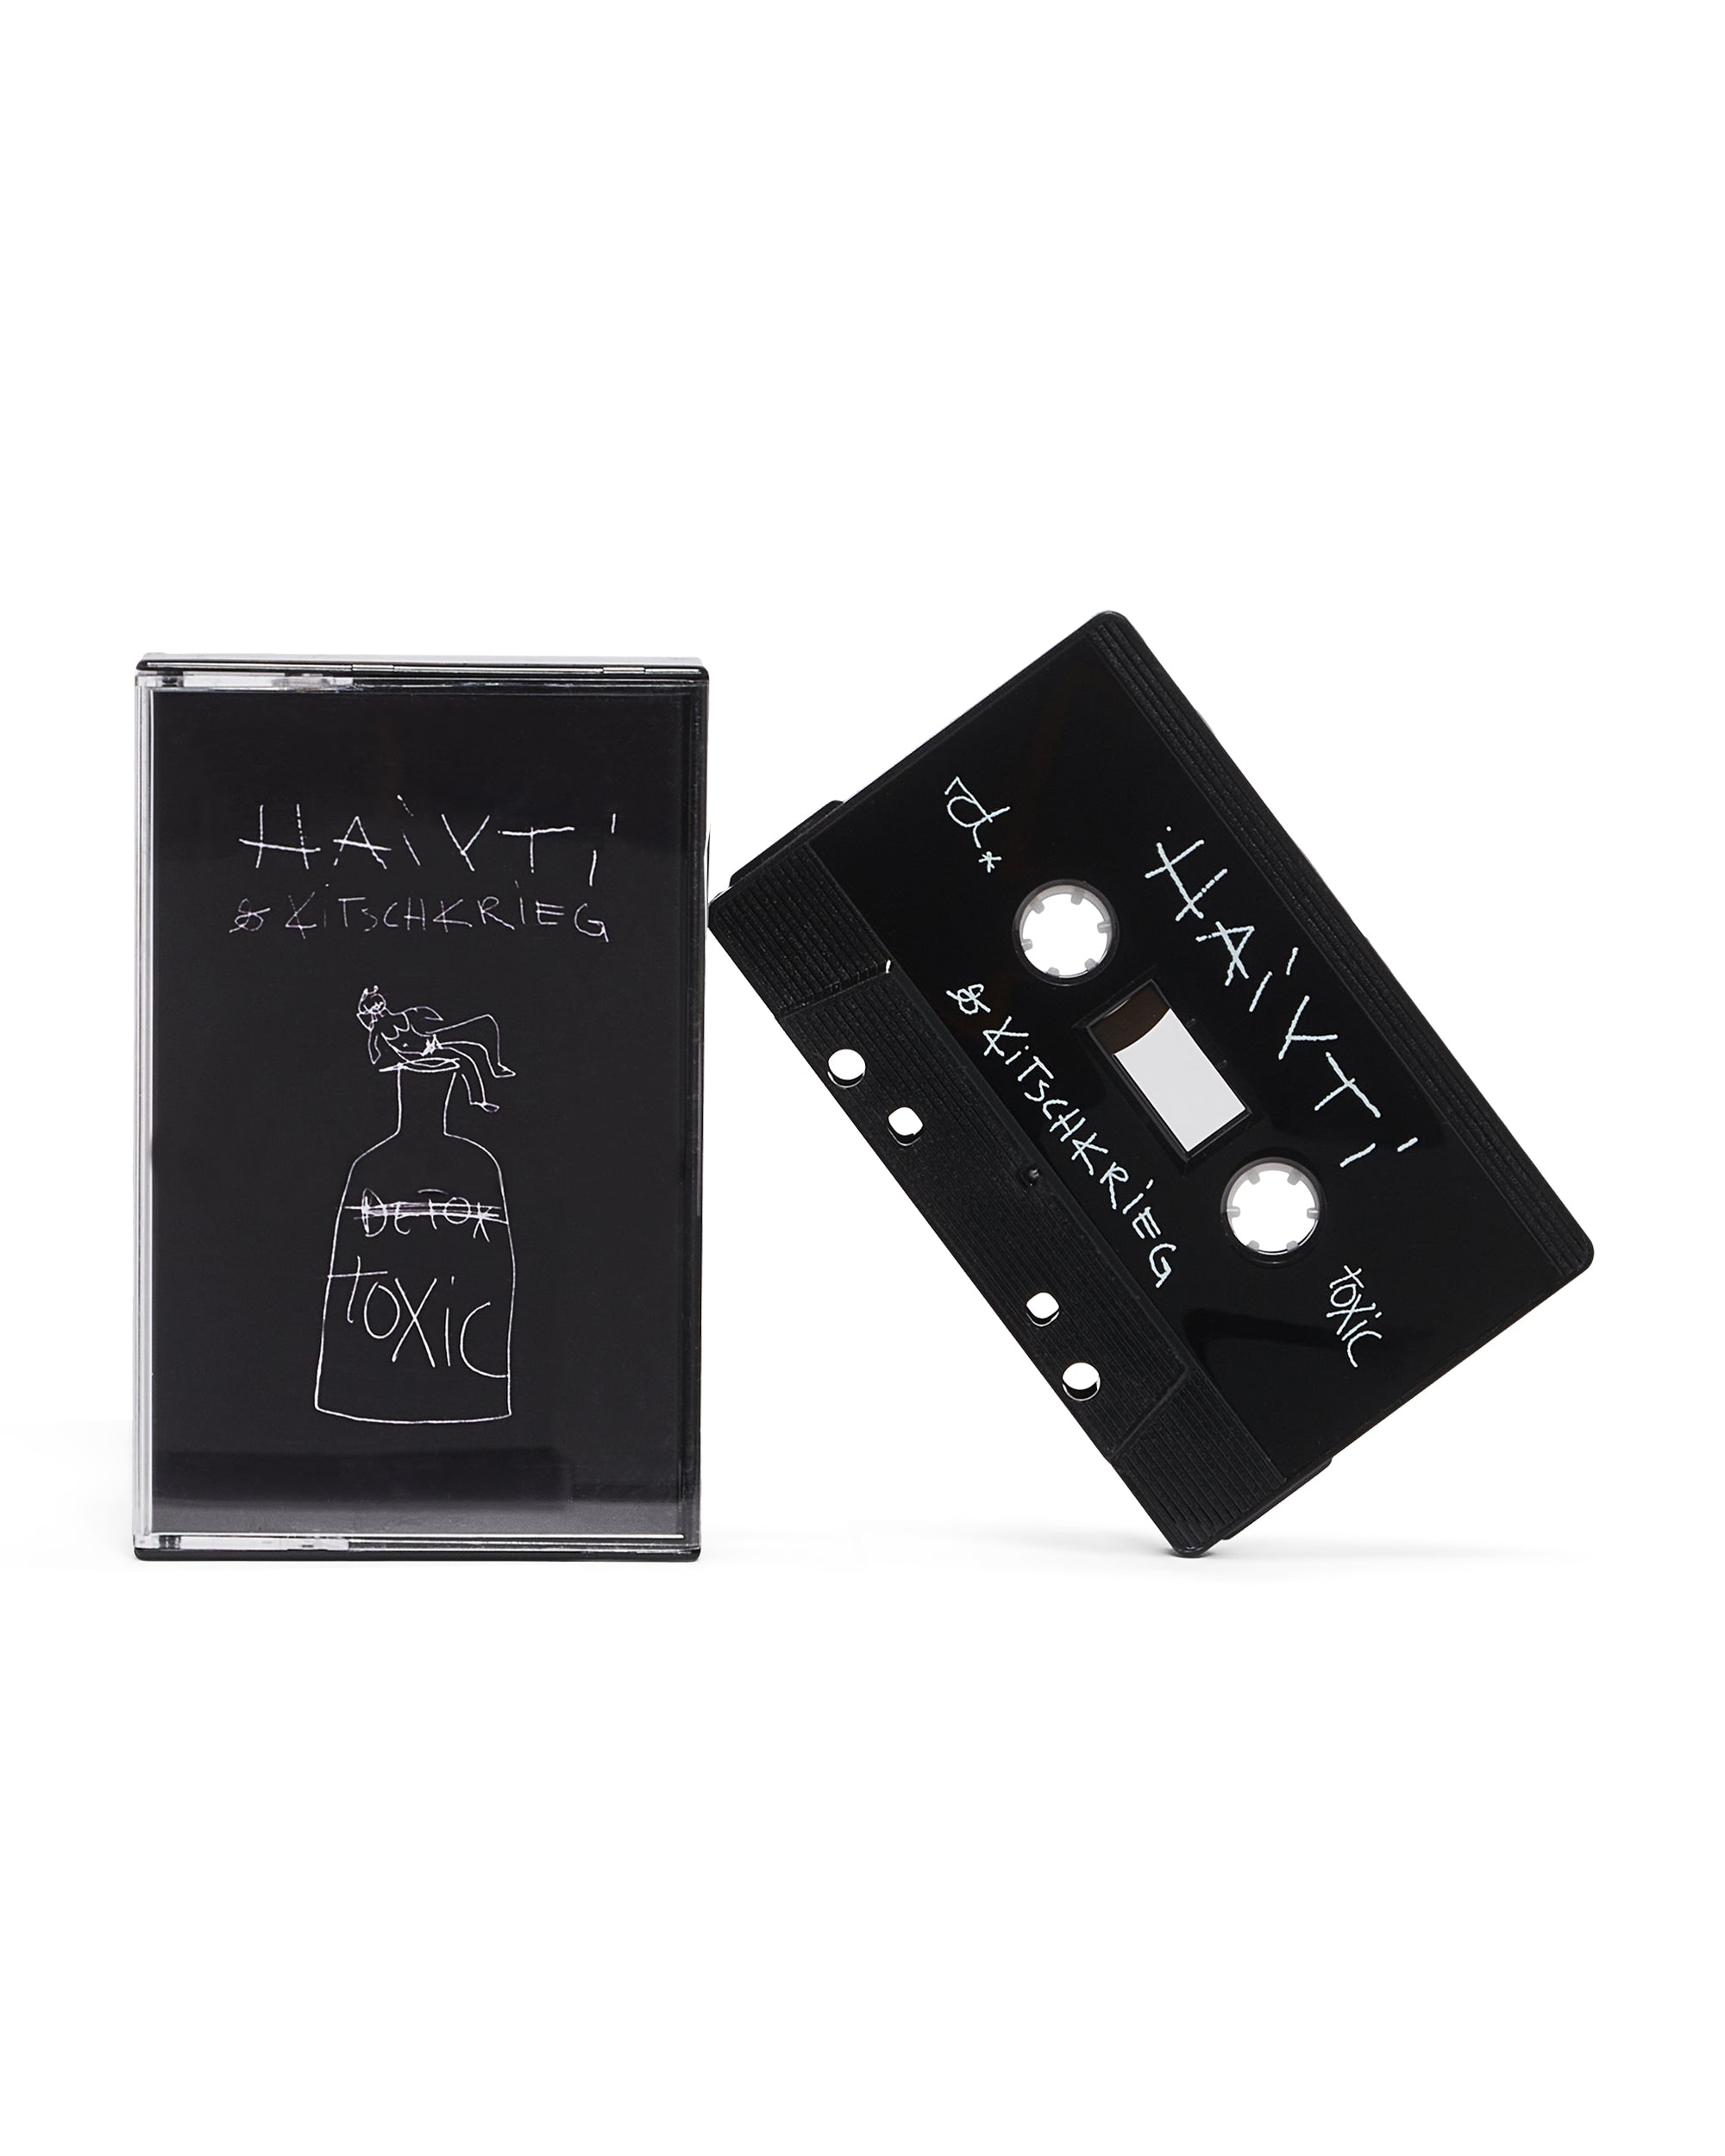 HAIYTI × KITSCHKRIEG "TOXIC" EP